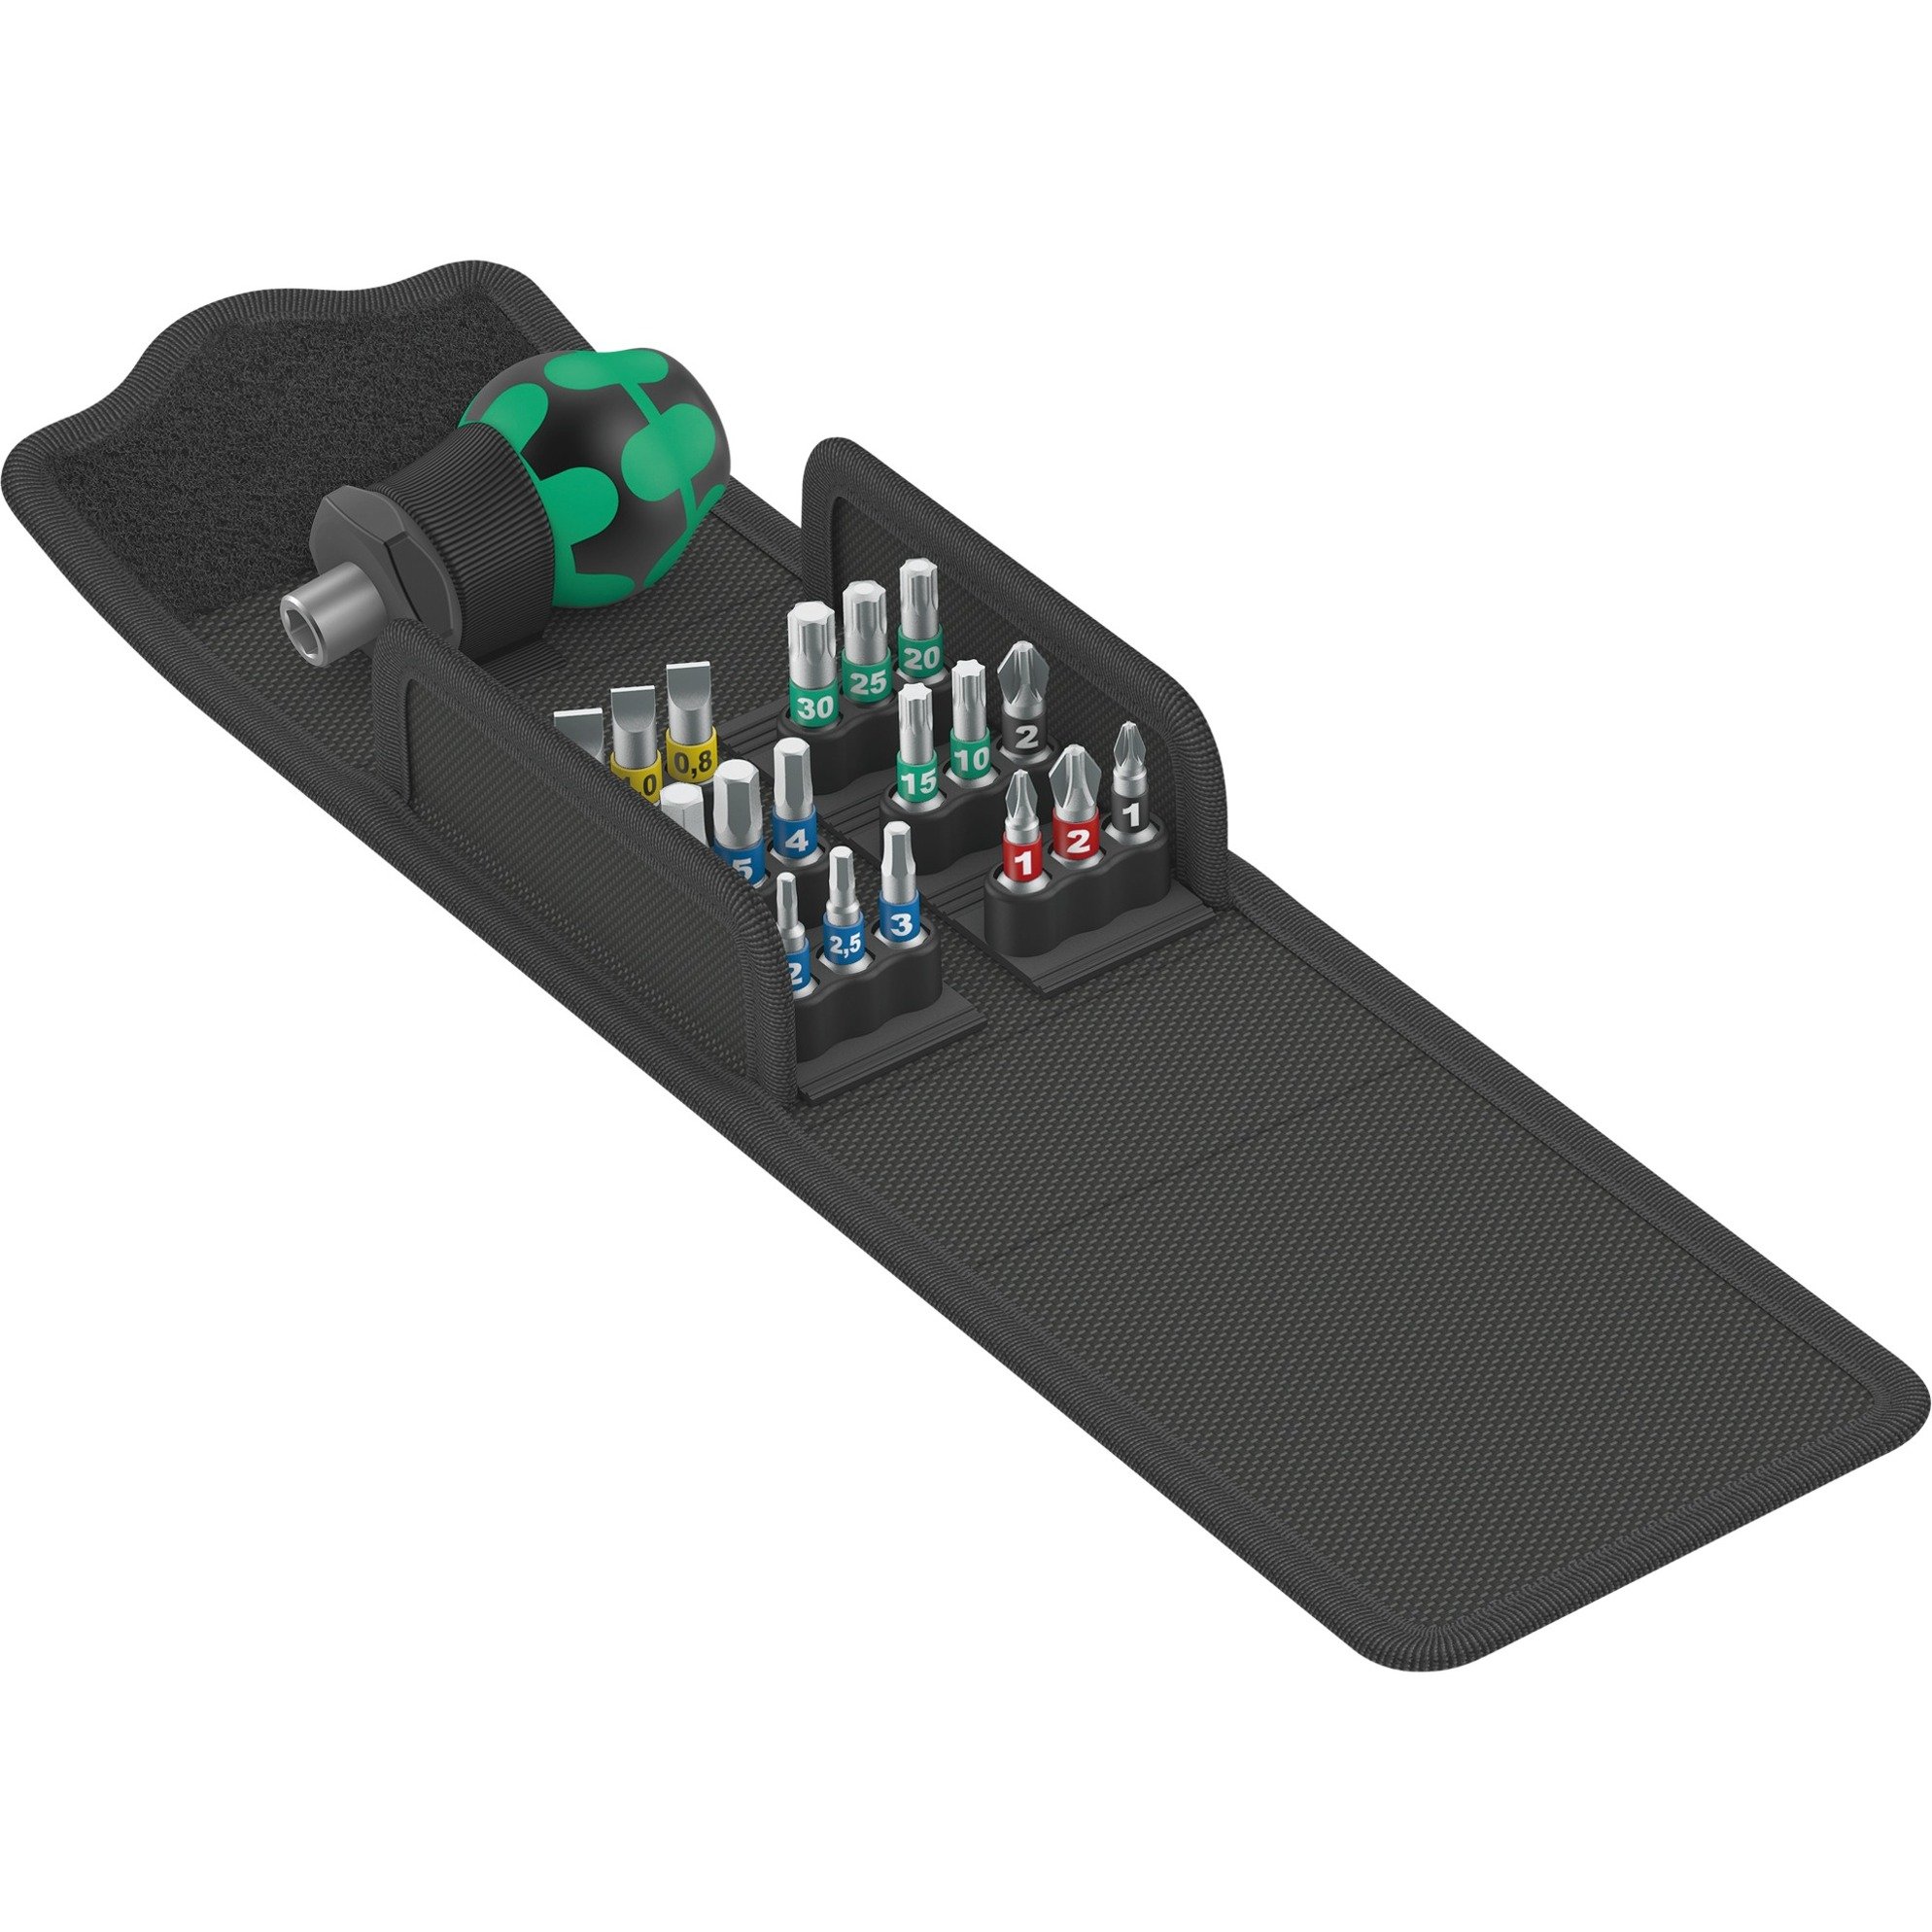 Image of Alternate - Kraftform Kompakt Stubby 1, 19-teilig, Steckschlüssel online einkaufen bei Alternate